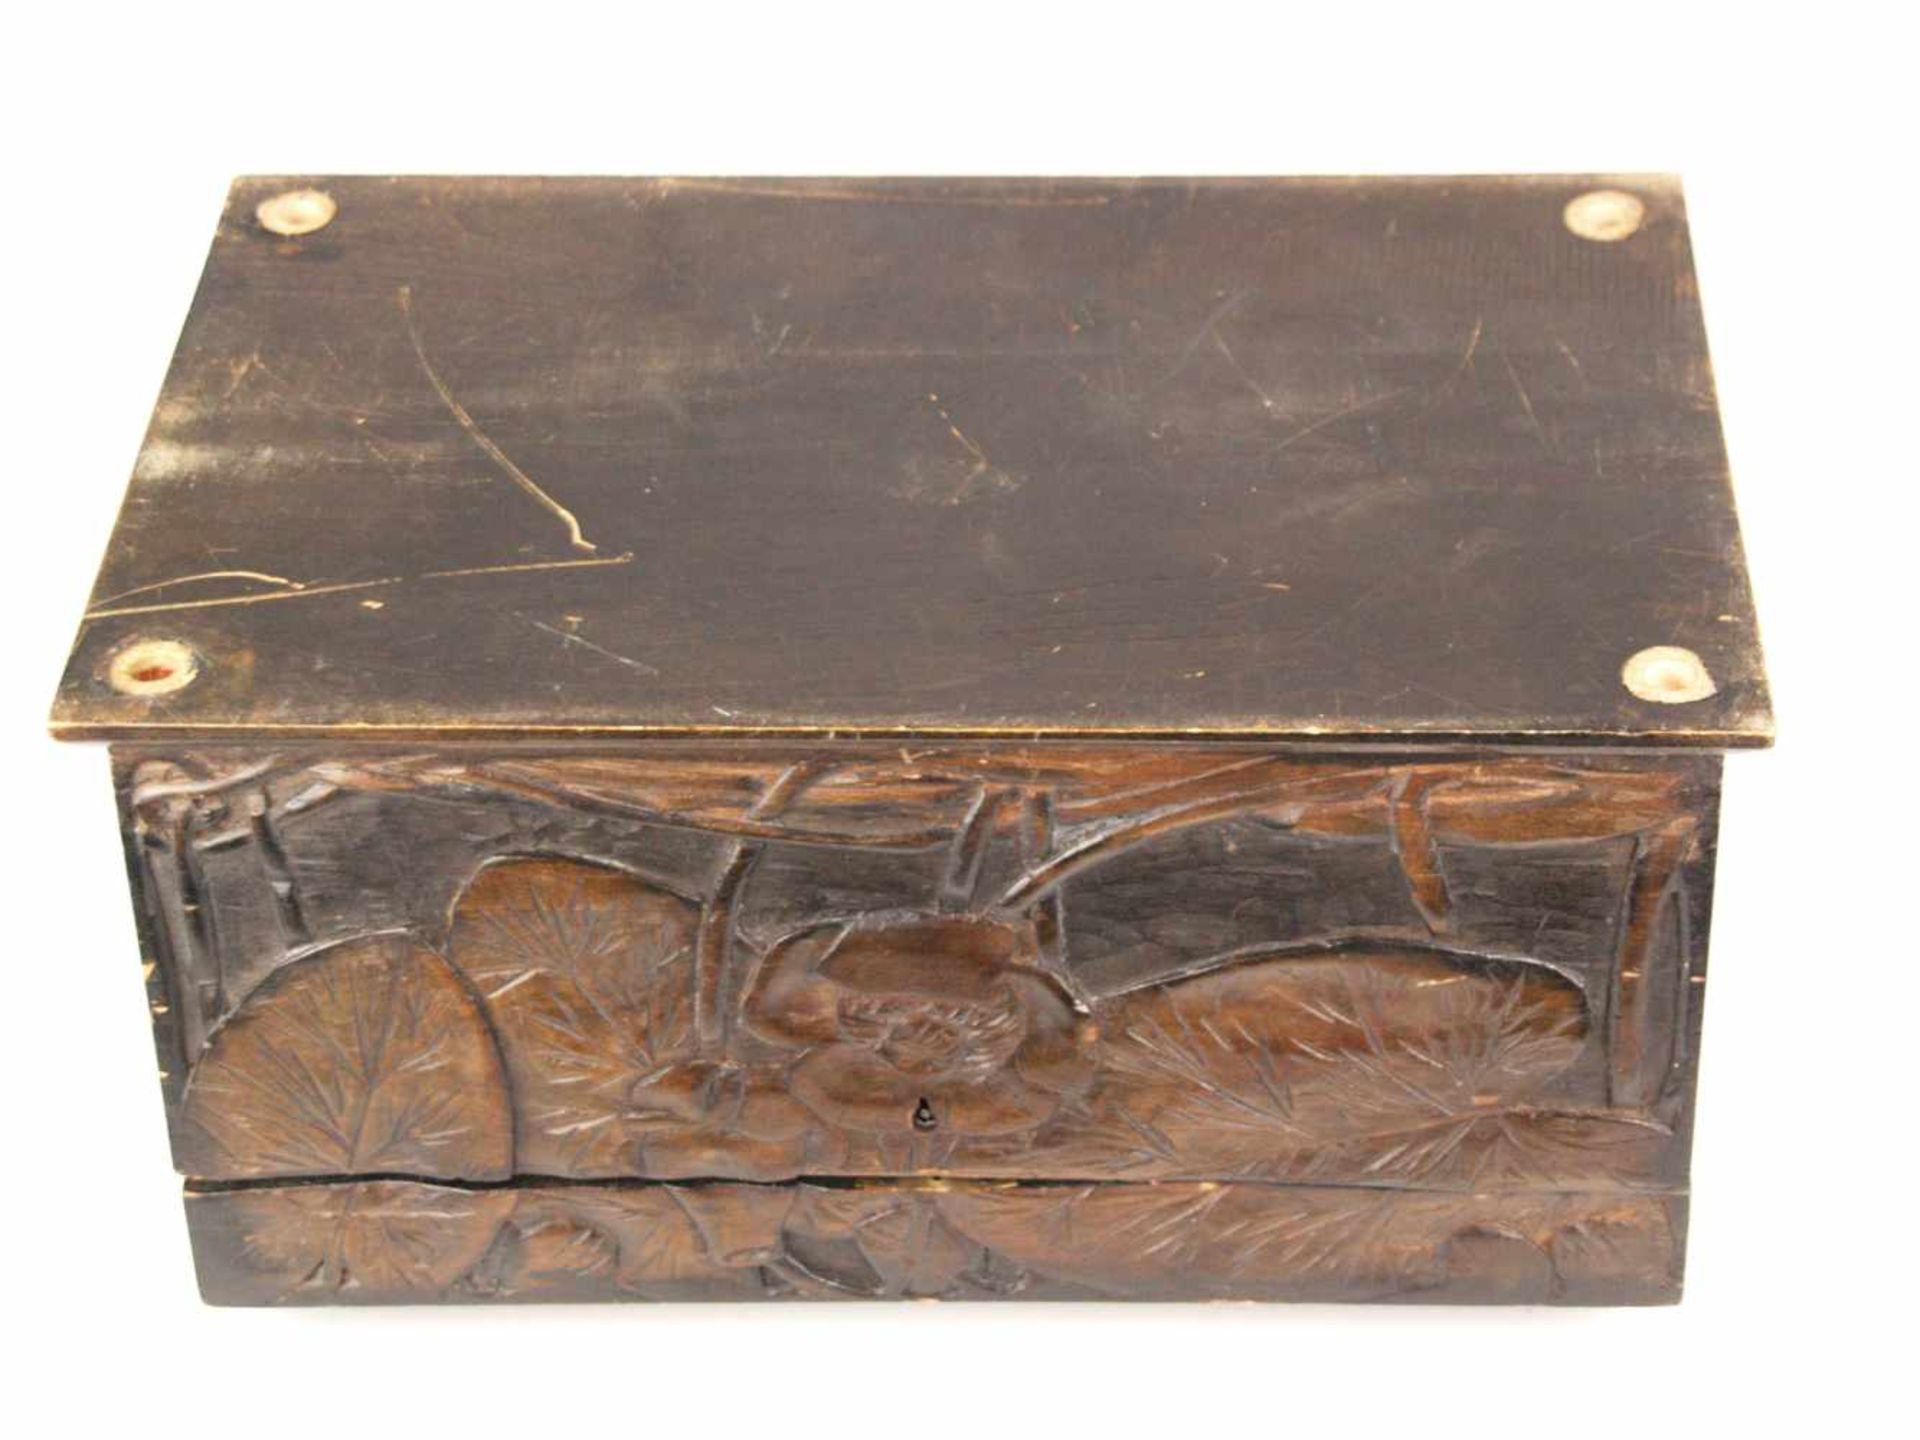 Holzkasten - rechteckiger Korpus, außen braun bemalt, geschnitzter Lotosblumen Dekor, - Bild 10 aus 10